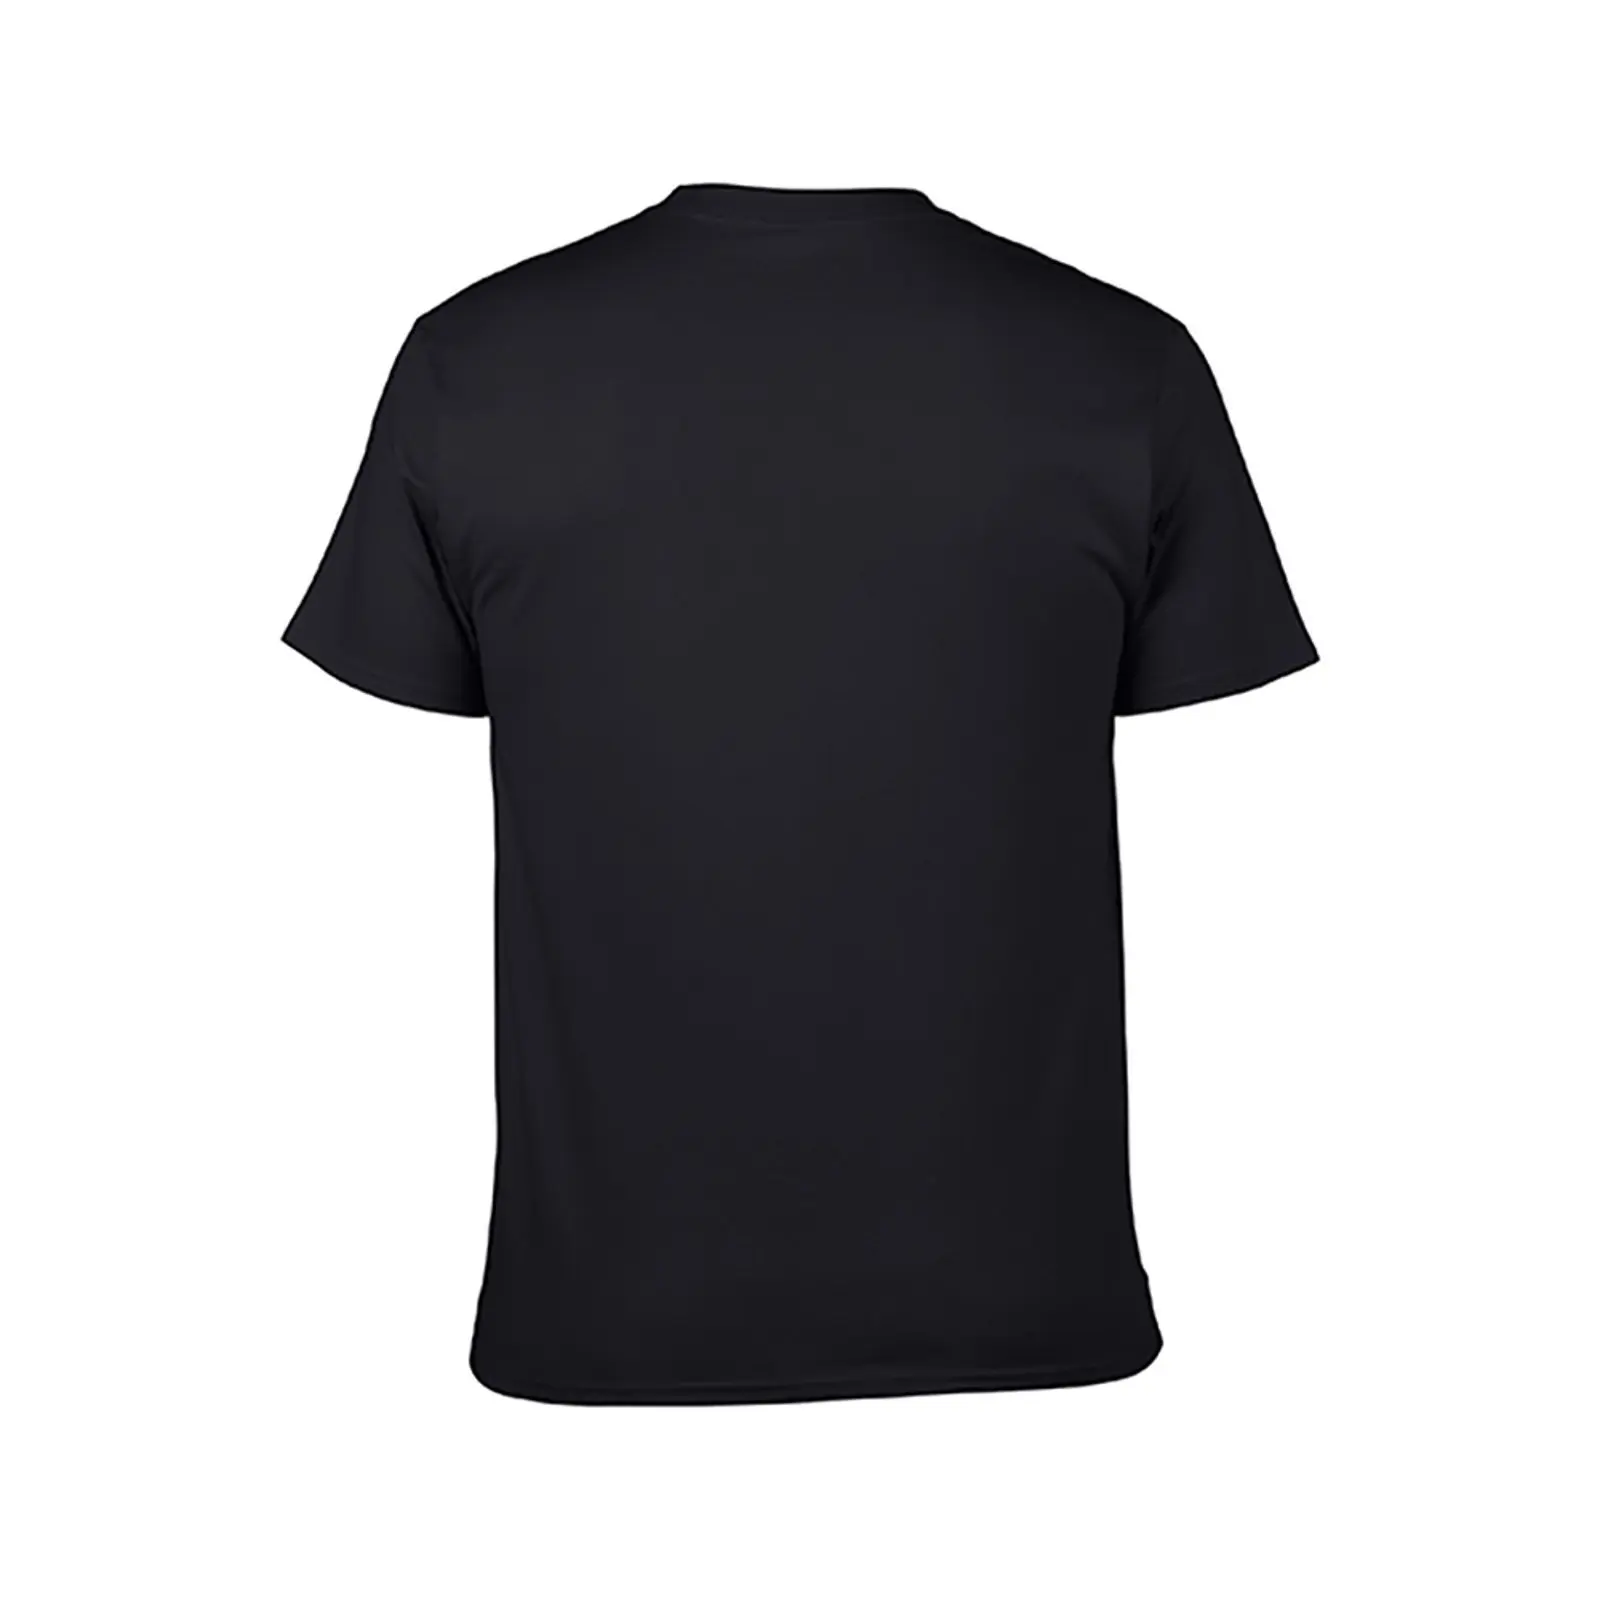 Тениска С дизайн шинного компаунда Формула 1, летни потници, тениска за момче, мъжка тениска с изображение - 2